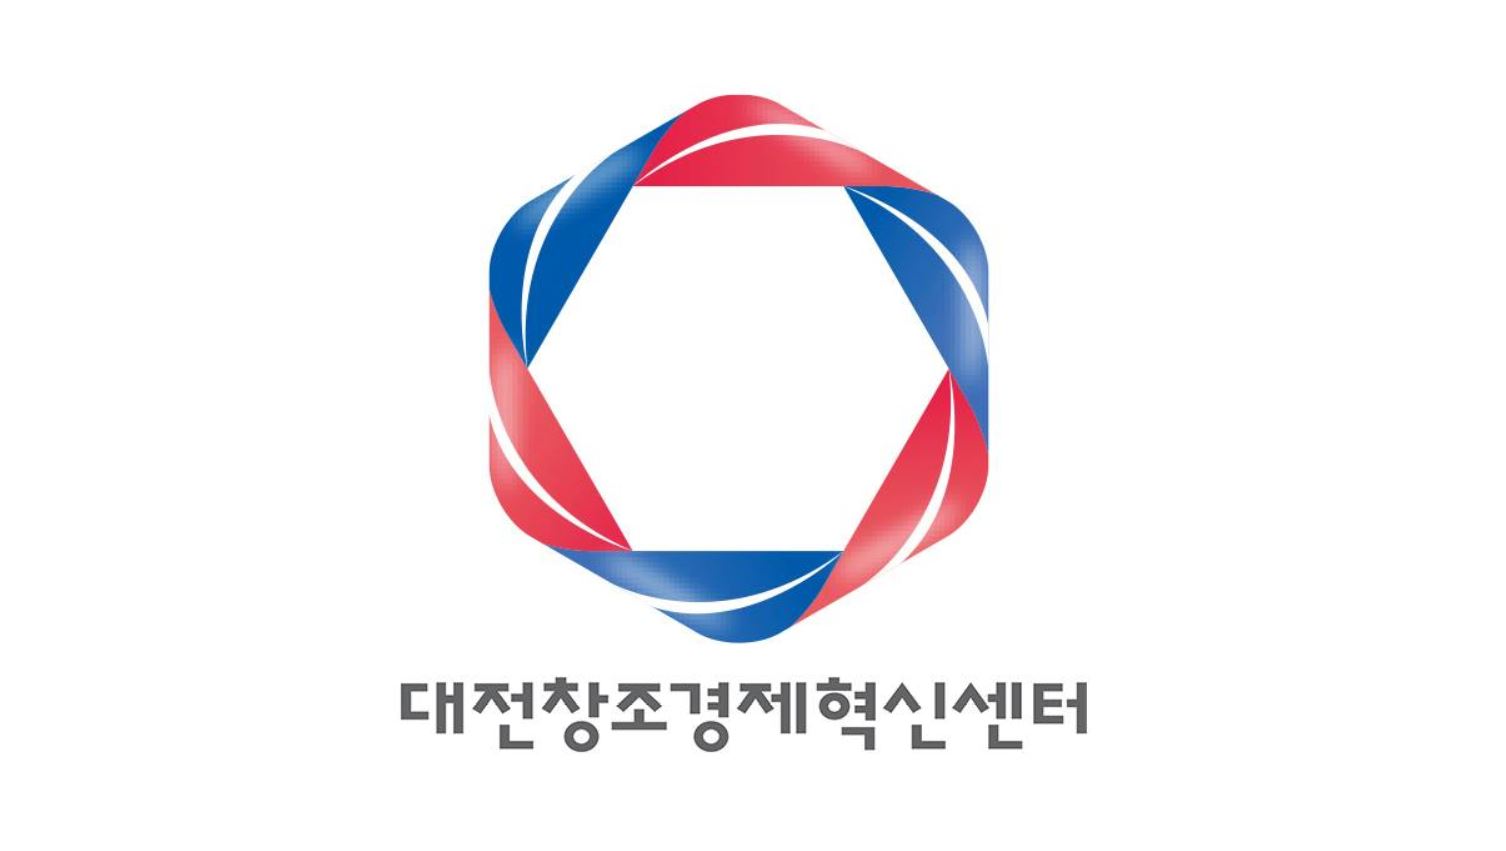 대전창조경제혁신센터는 지난 6년 동안 기록한 기관 운영 실적을 17일 발표했다. <사진=대전창조경제혁신센터 제공>